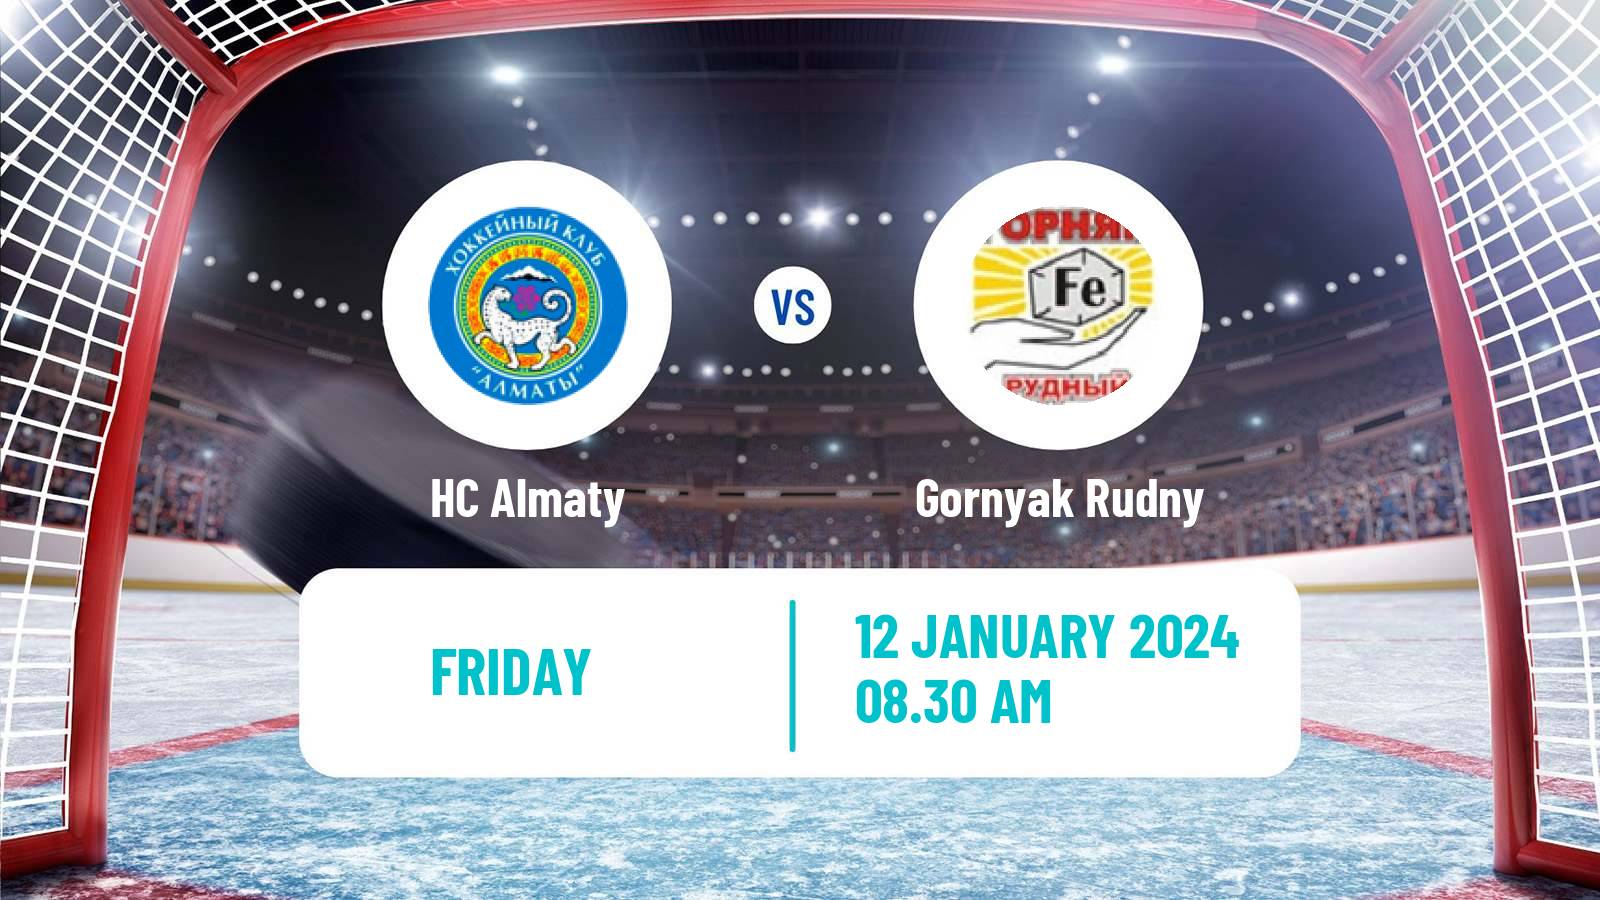 Hockey Kazakh Ice Hockey Championship Almaty - Gornyak Rudny